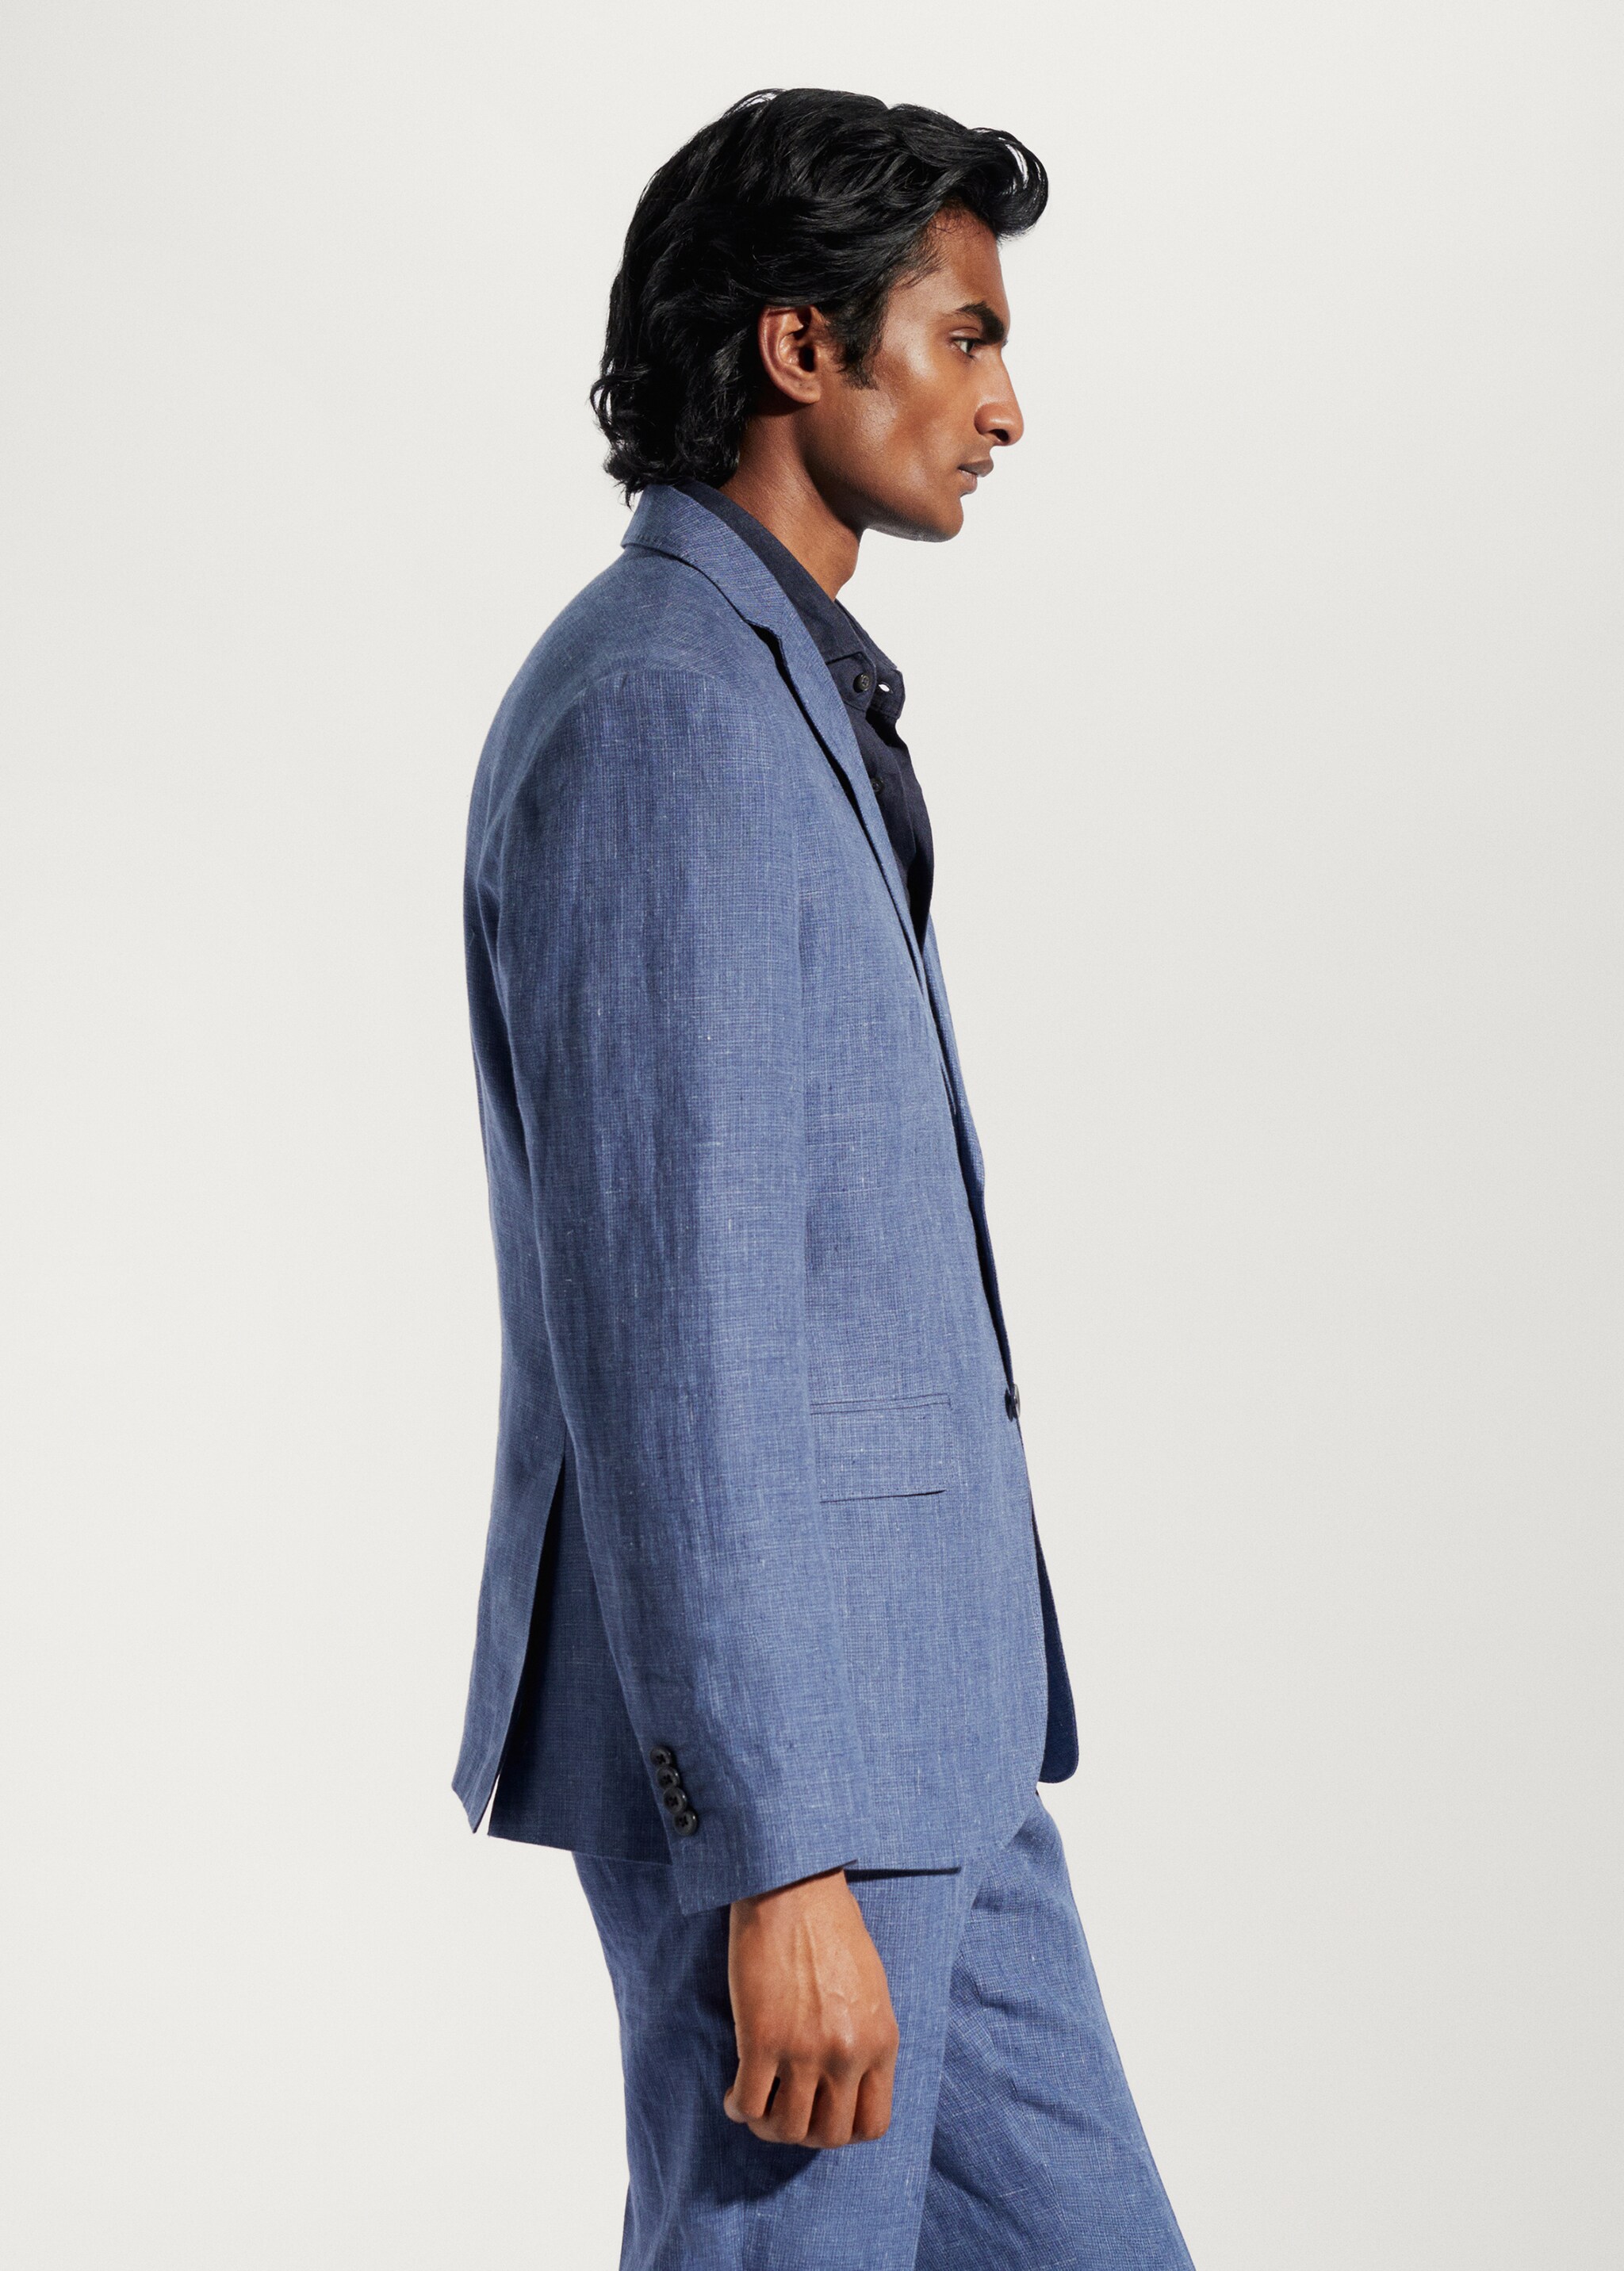 Blazer suit 100% linen - Details of the article 2